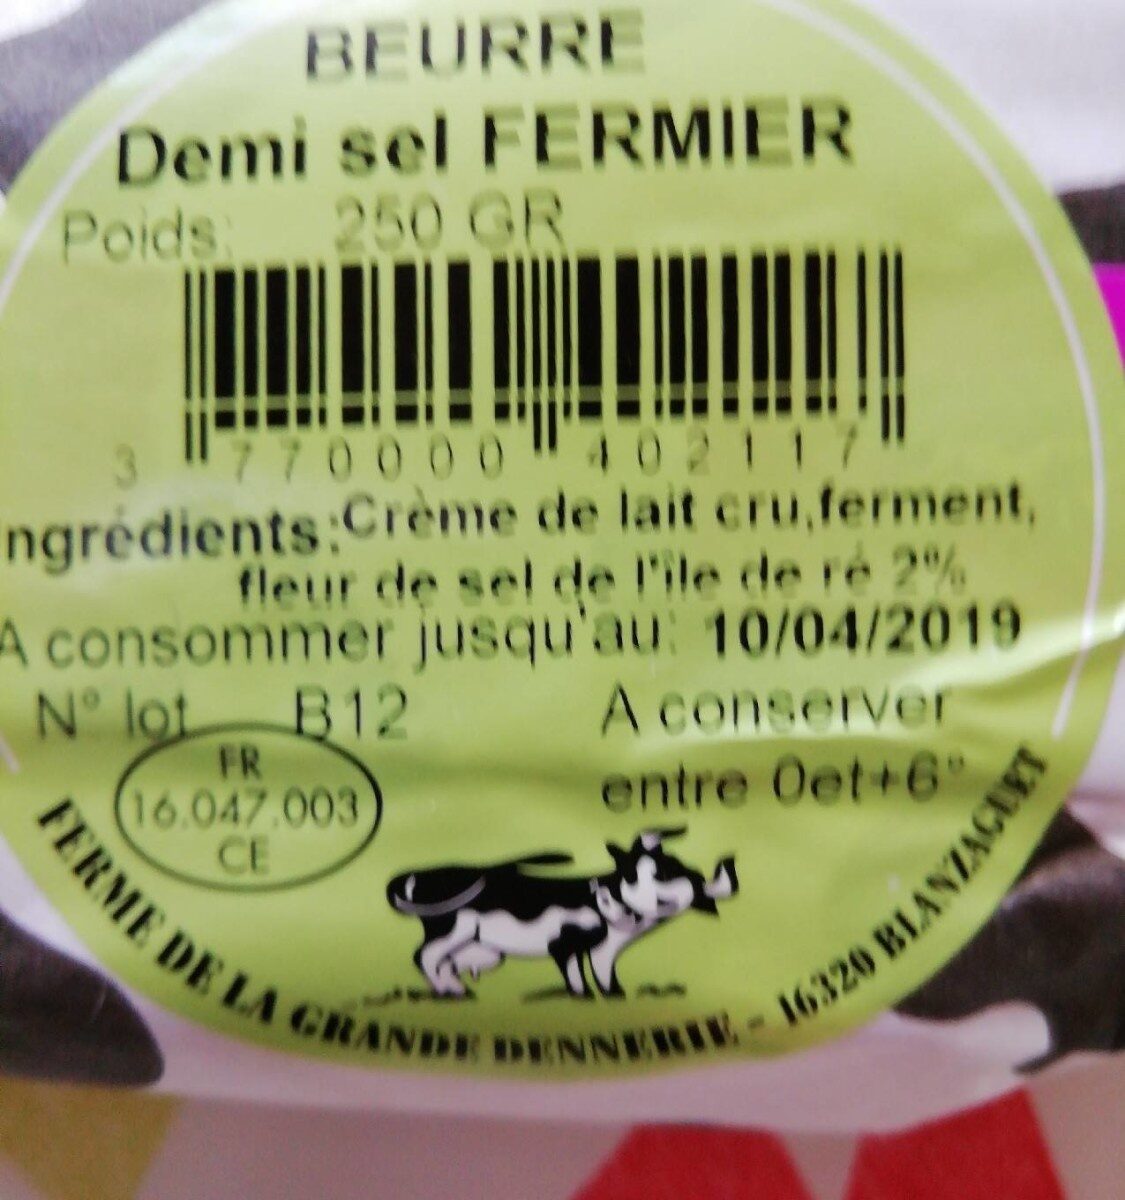 Beurre demi sel fermier - Ingredients - fr